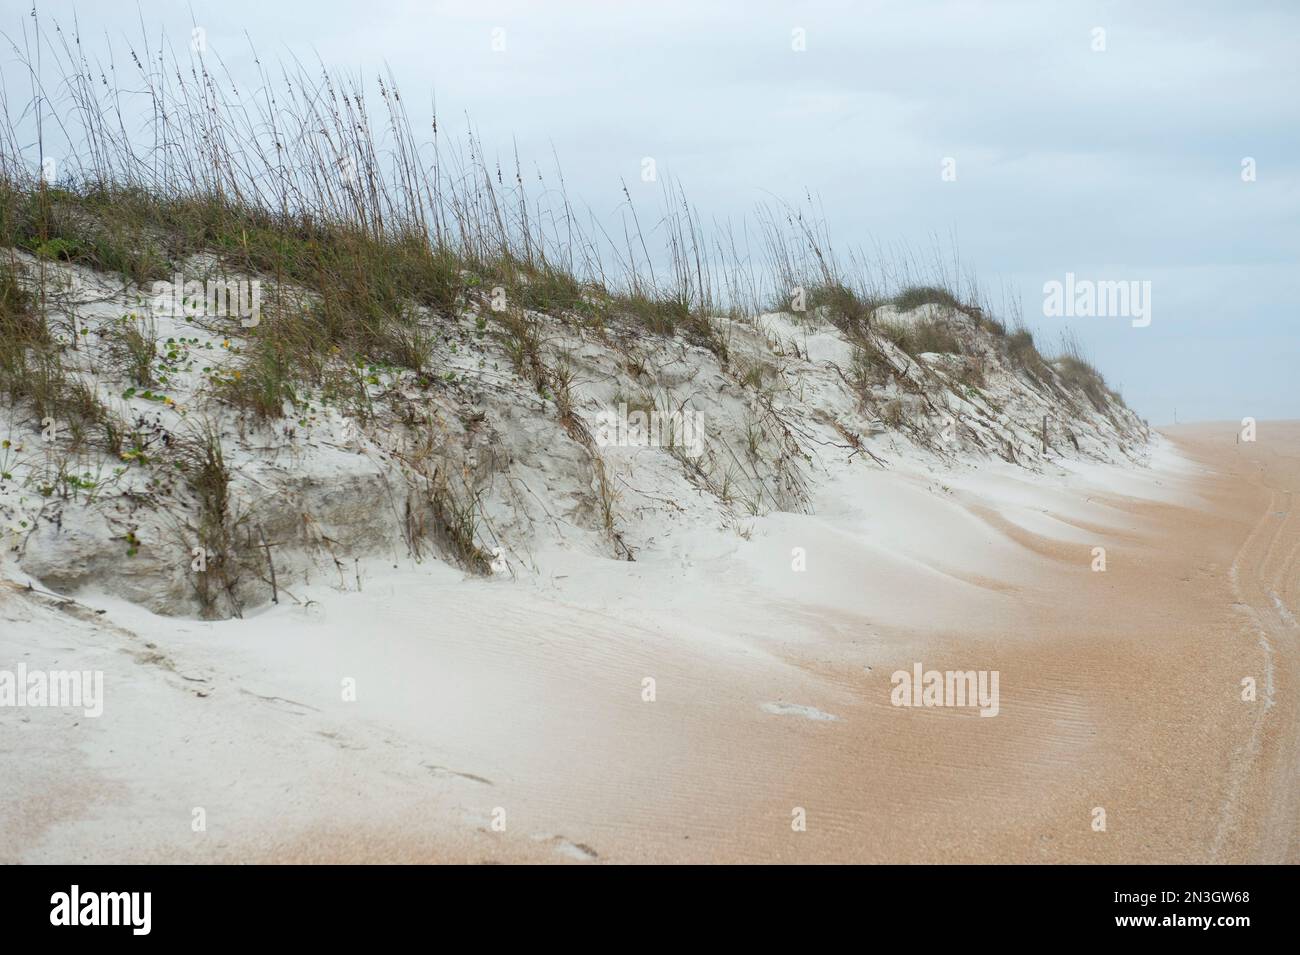 L'habitat naturale delle dune di sabbia del topo da spiaggia dell'isola di Anastasia (Peromyscus polionotus phasma), a rischio federale, e l'Anastasia Island State Park Foto Stock